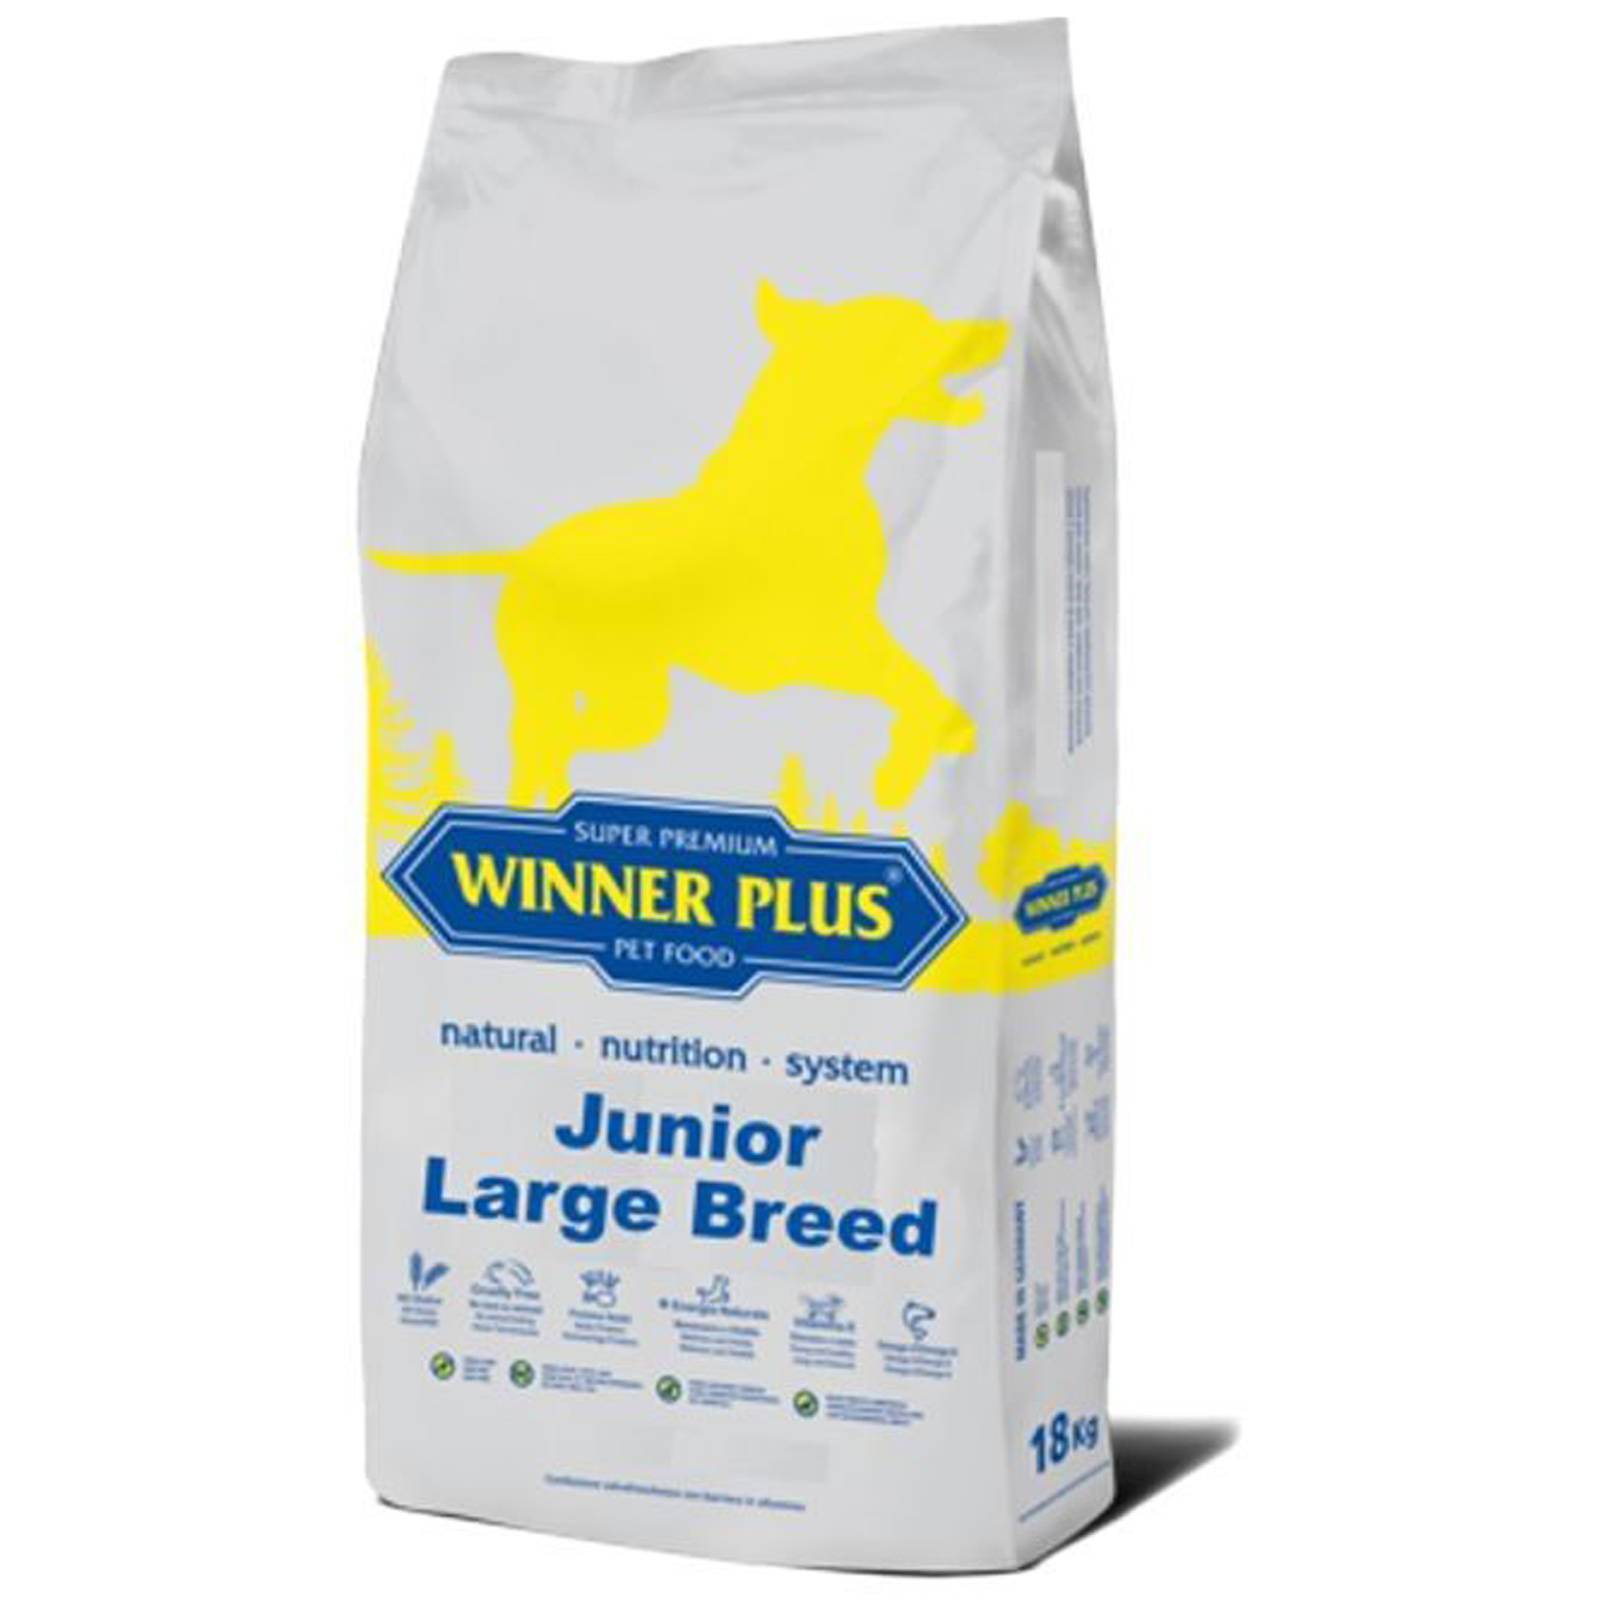 Winner Plus Super Premium Junior Large Breed 18 kg